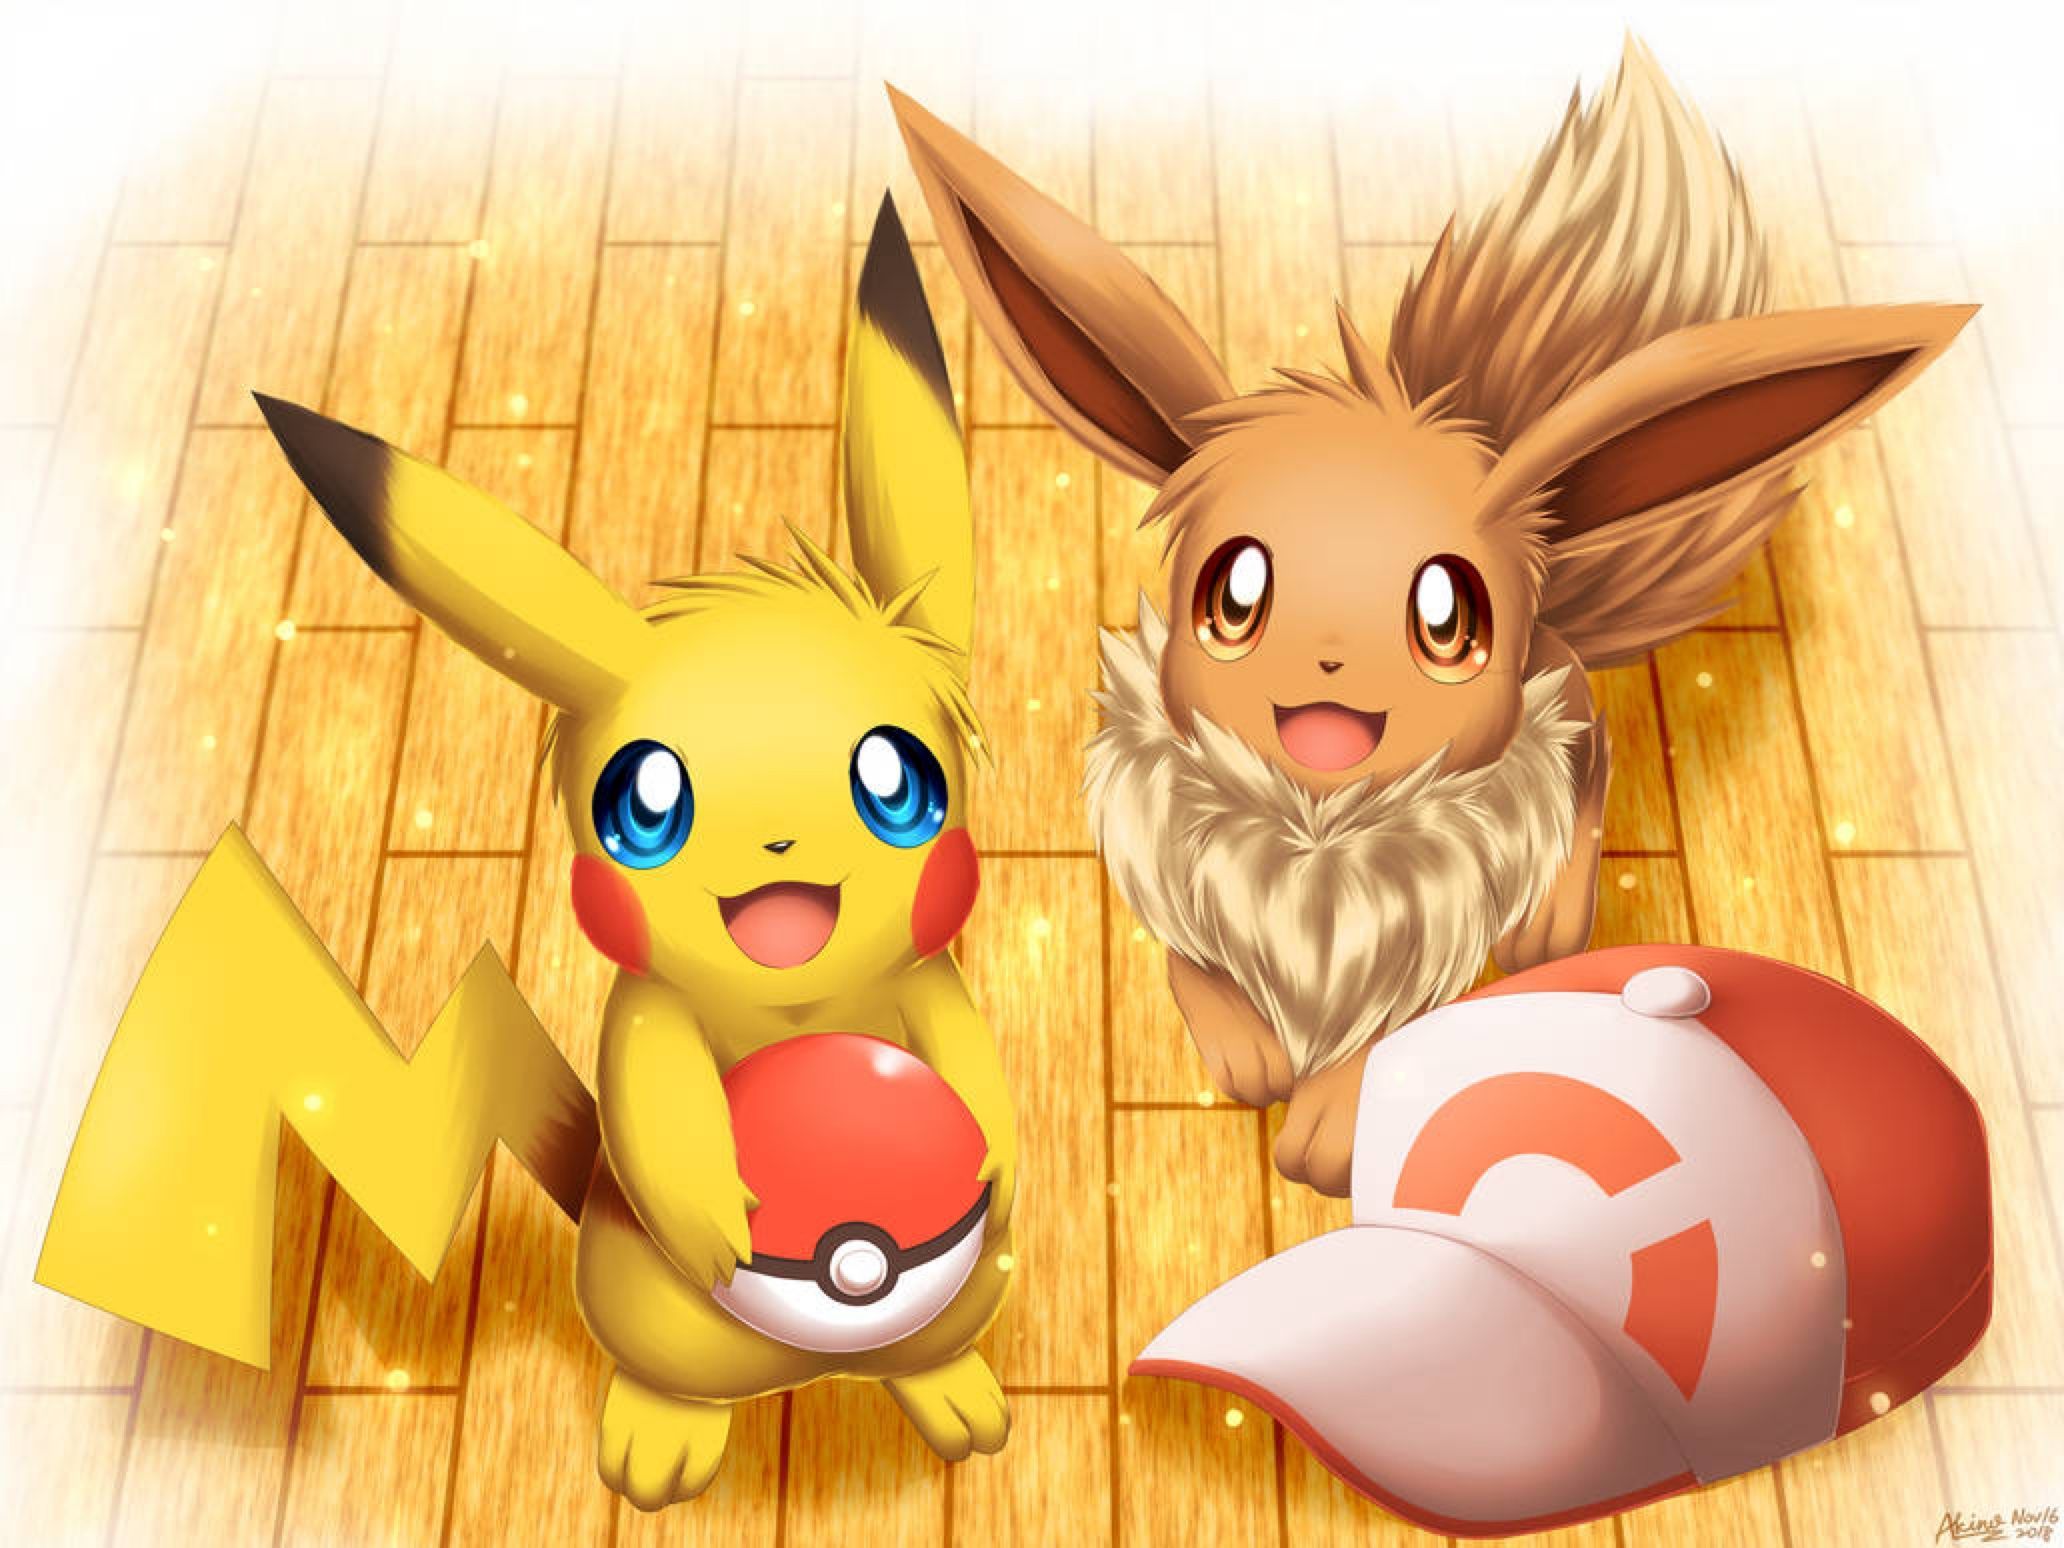 Let's Go. Cute pokemon wallpaper, Pokemon firered, Cute pokemon